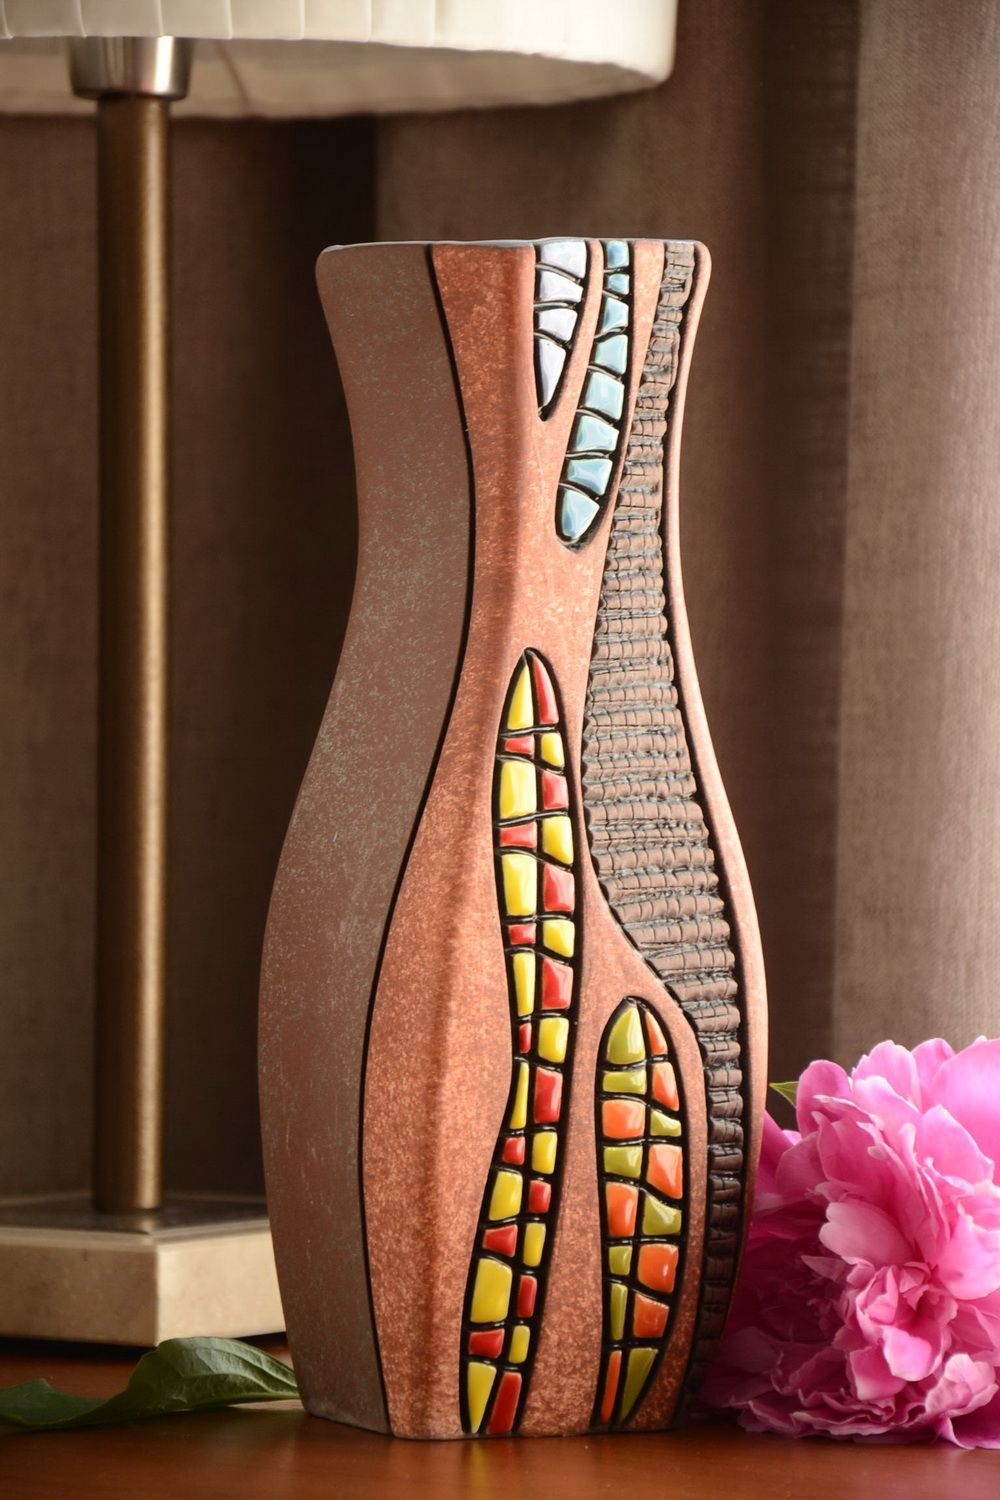 Глиняная ваза ручной работы с росписью пигментами красивая для декора дома 2.2 л фото 1